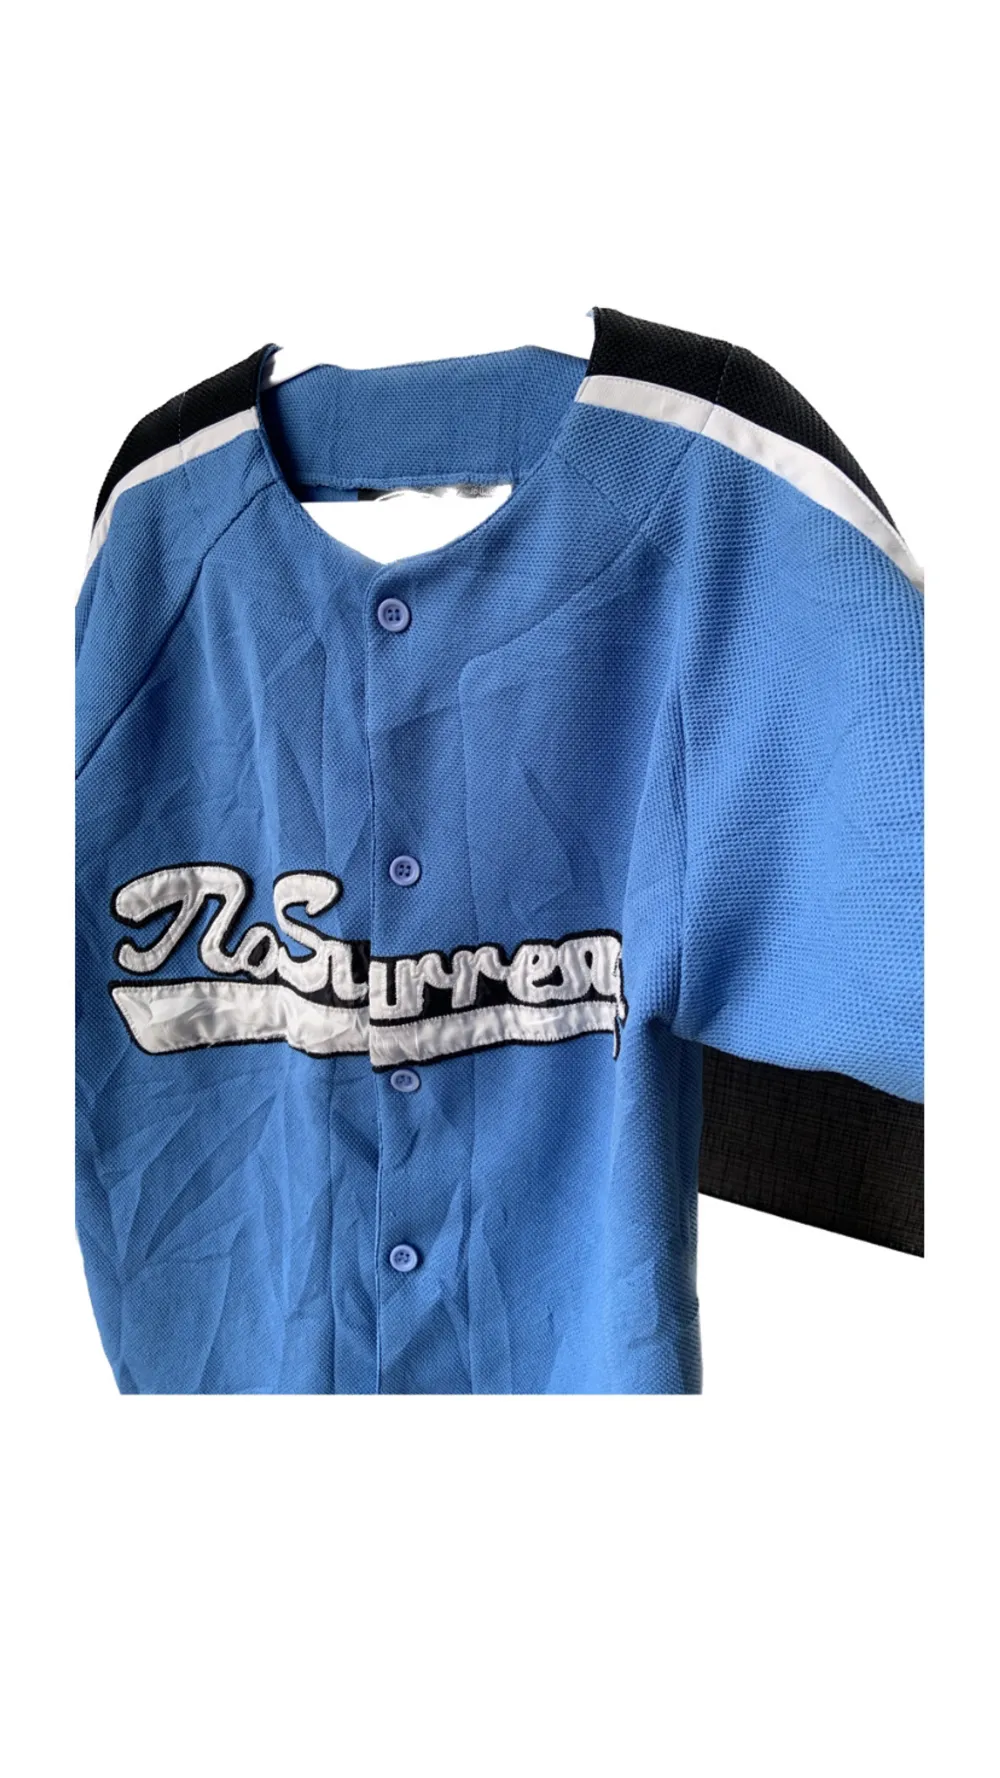 Vintage Jersey från No Surrender.  Är i one size, men sitter som en XS.  Är i luftigt jersey material. Condition 9/10.. T-shirts.